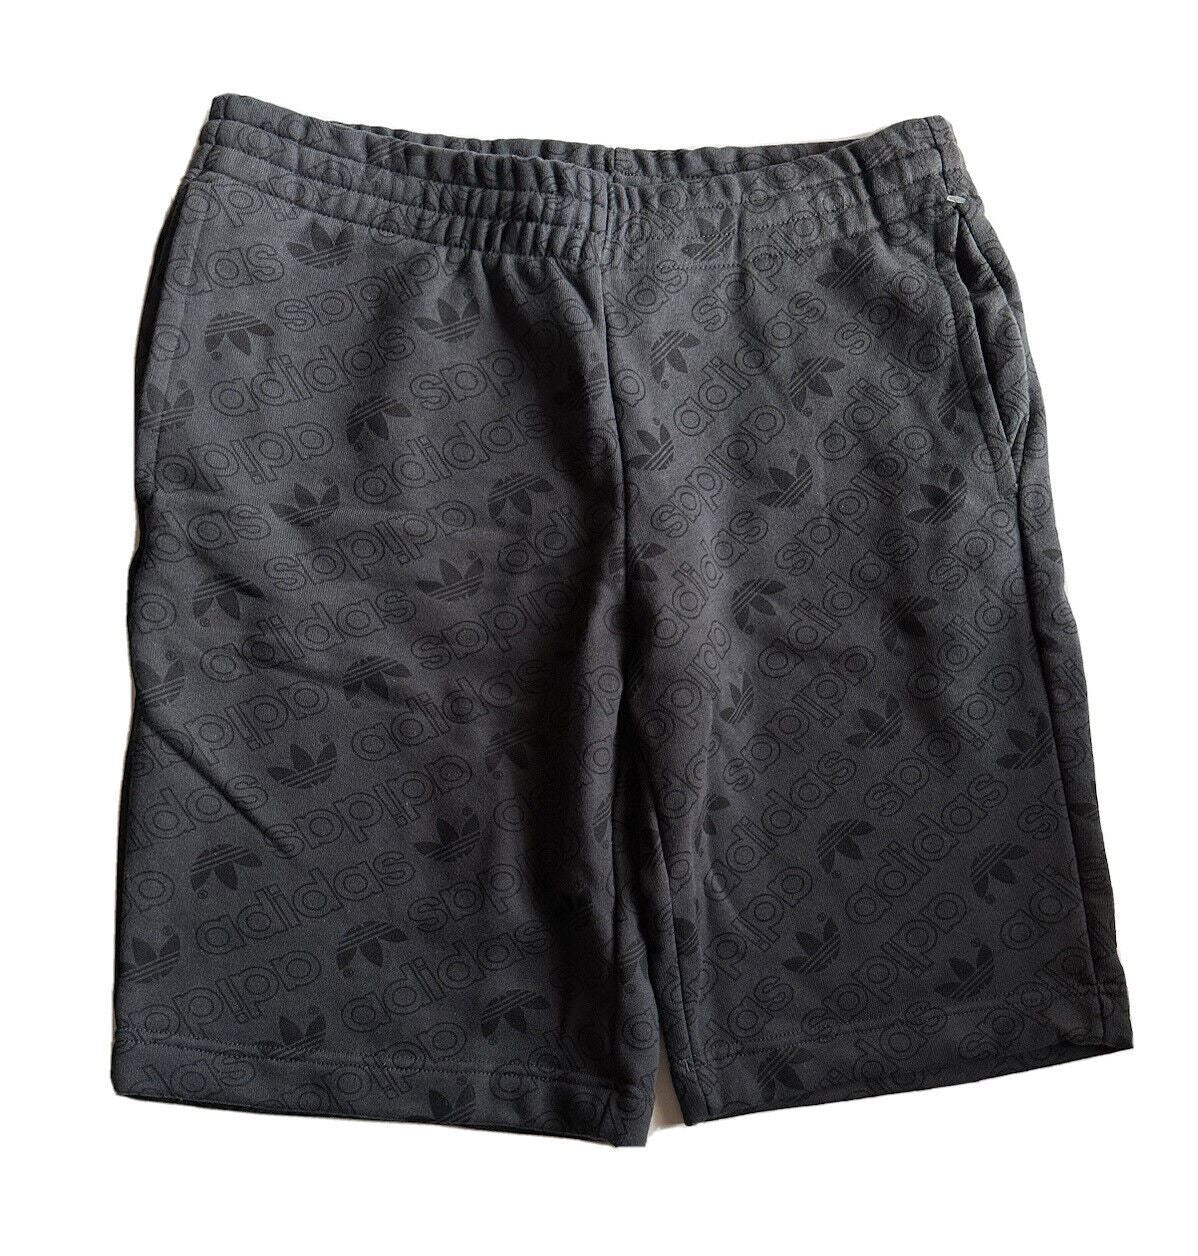 NWT $60 Adidas Men's Black Shorts Large